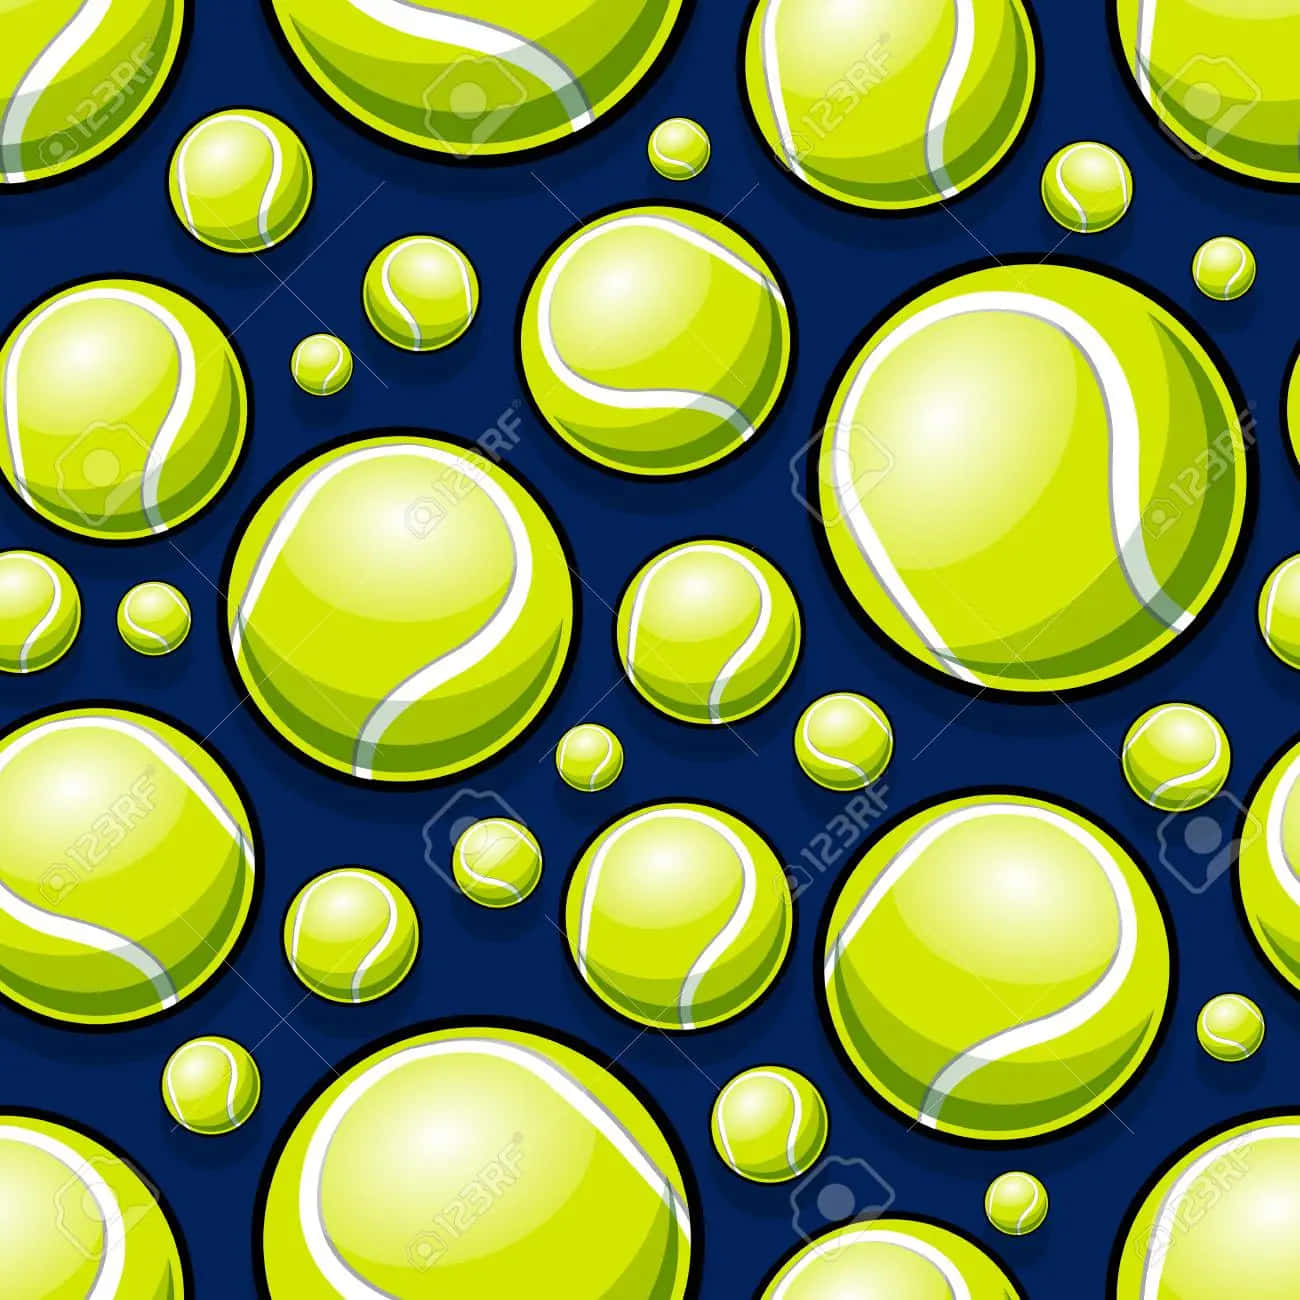 A Tennis Ball On the court Wallpaper